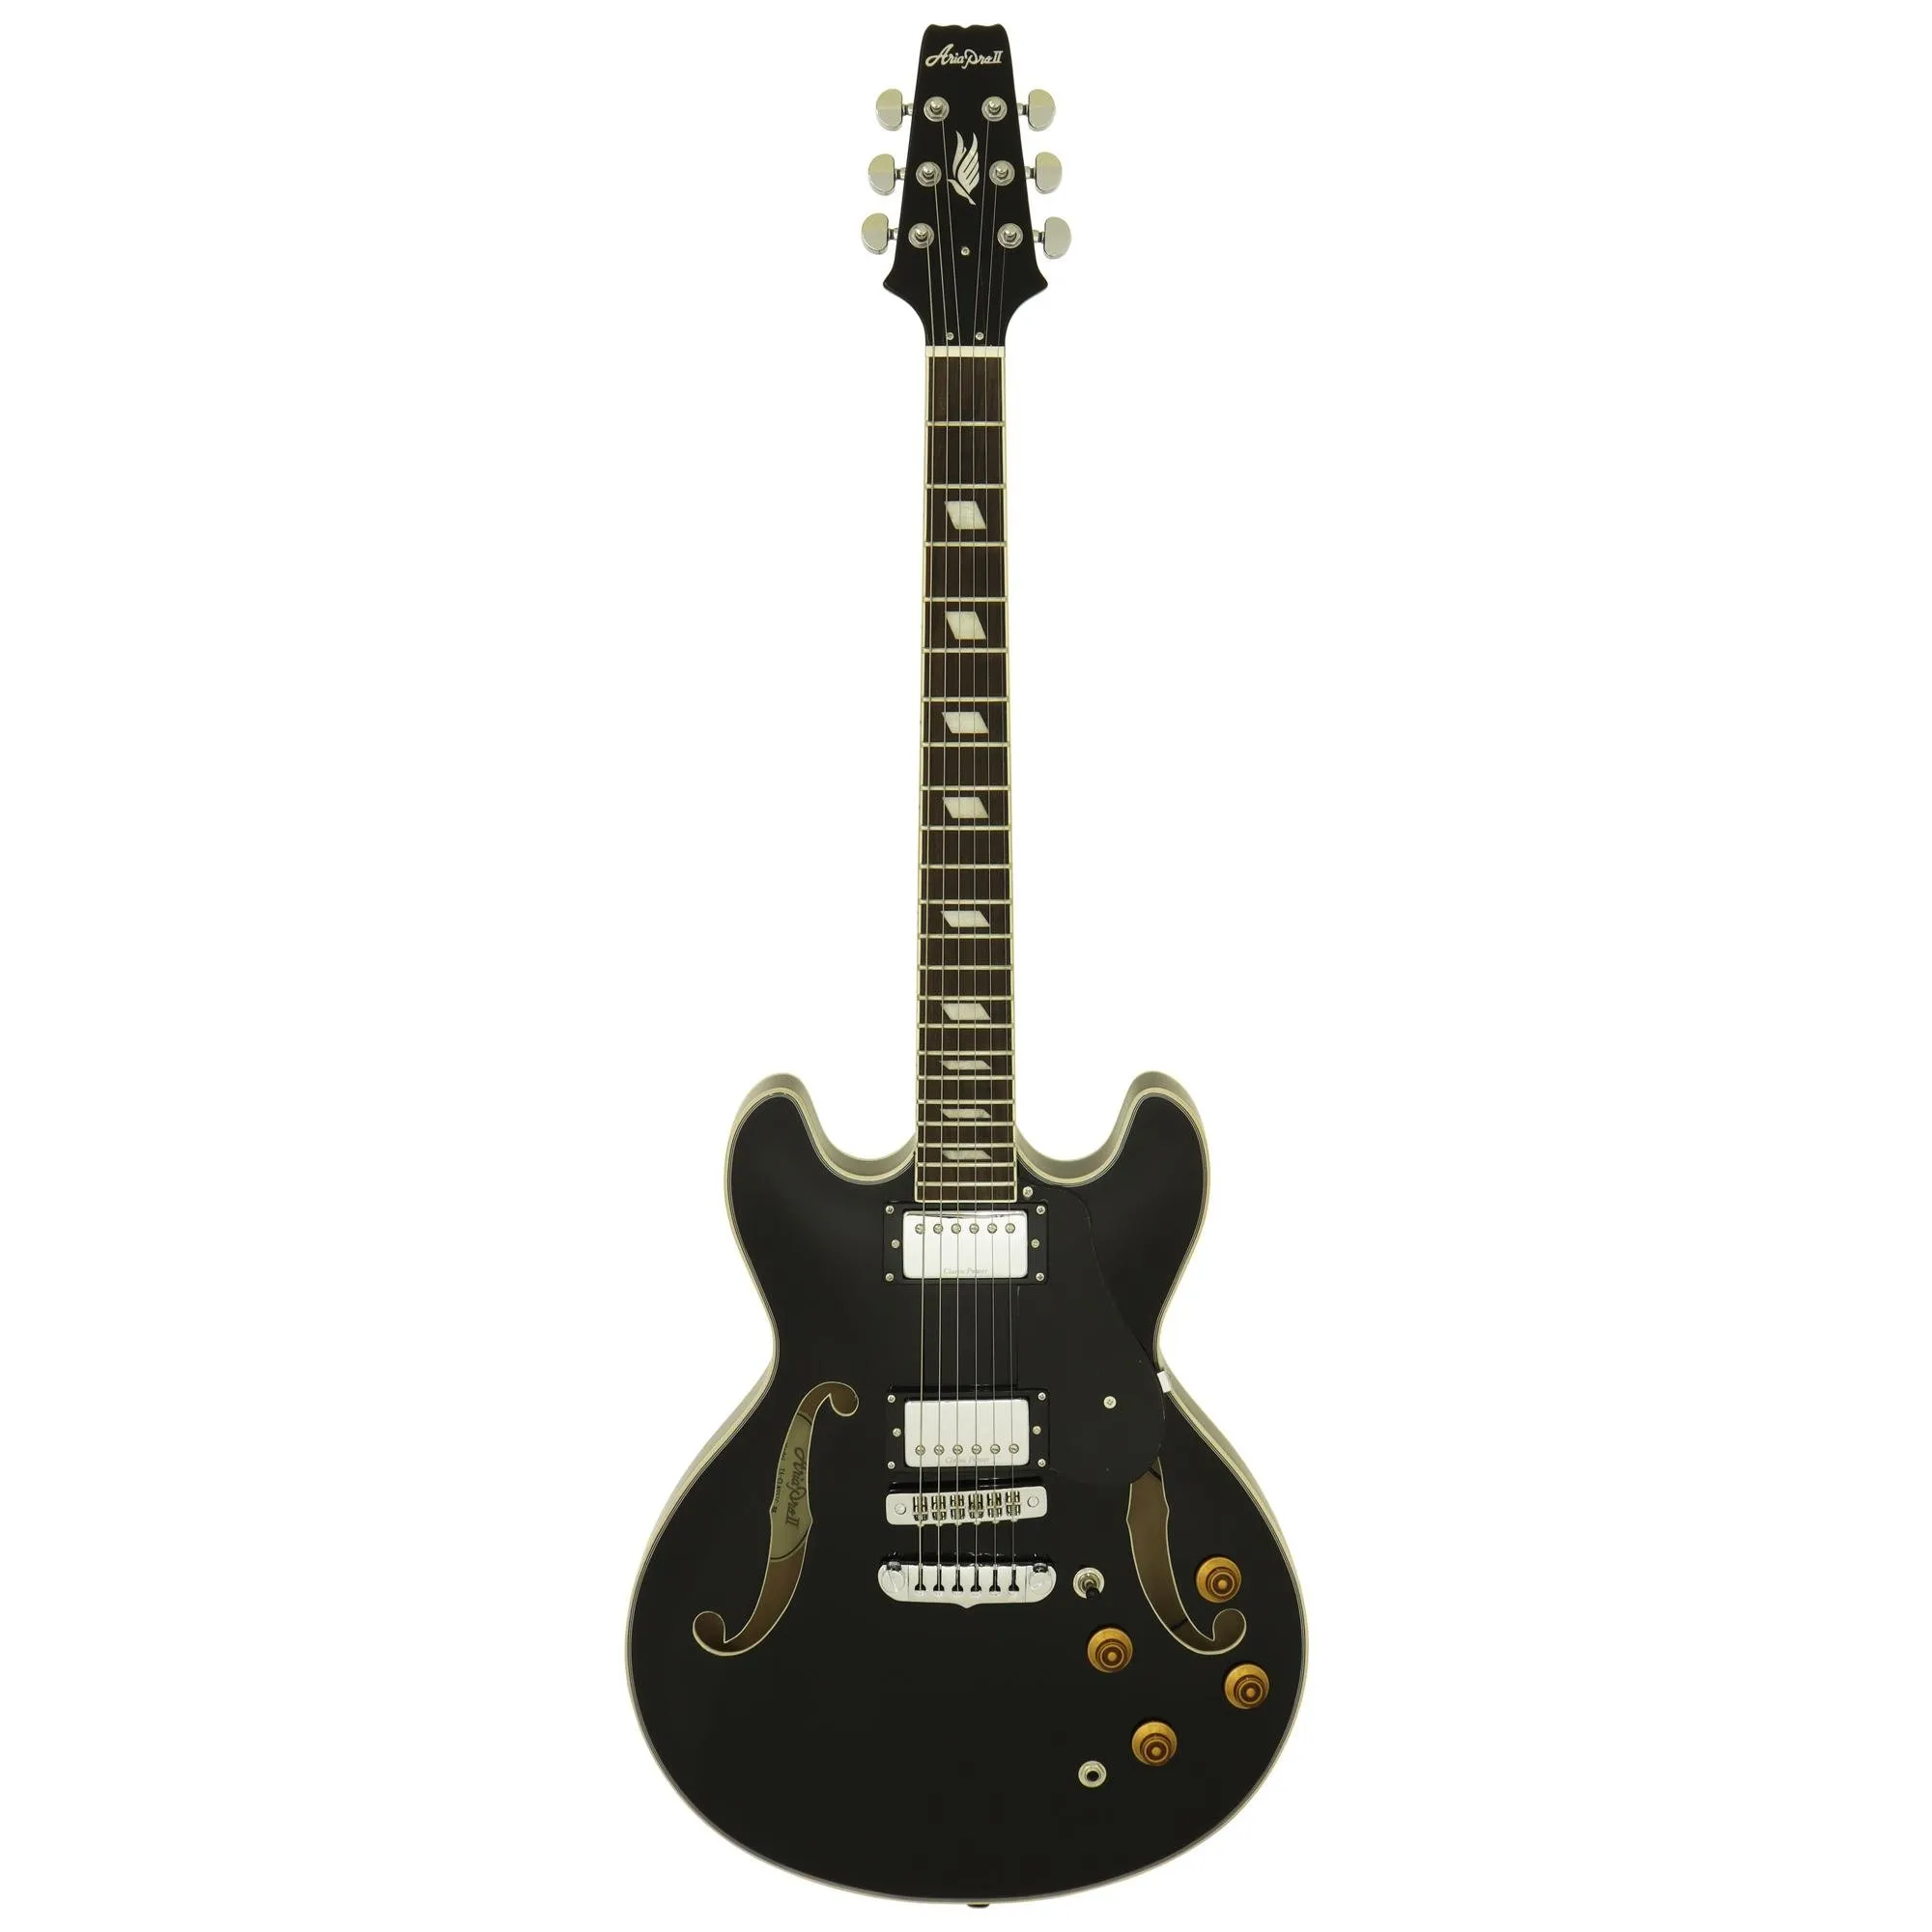 Guitarra Aria Pro II TA-CLASSIC Black por 0,00 à vista no boleto/pix ou parcele em até 1x sem juros. Compre na loja Mundomax!